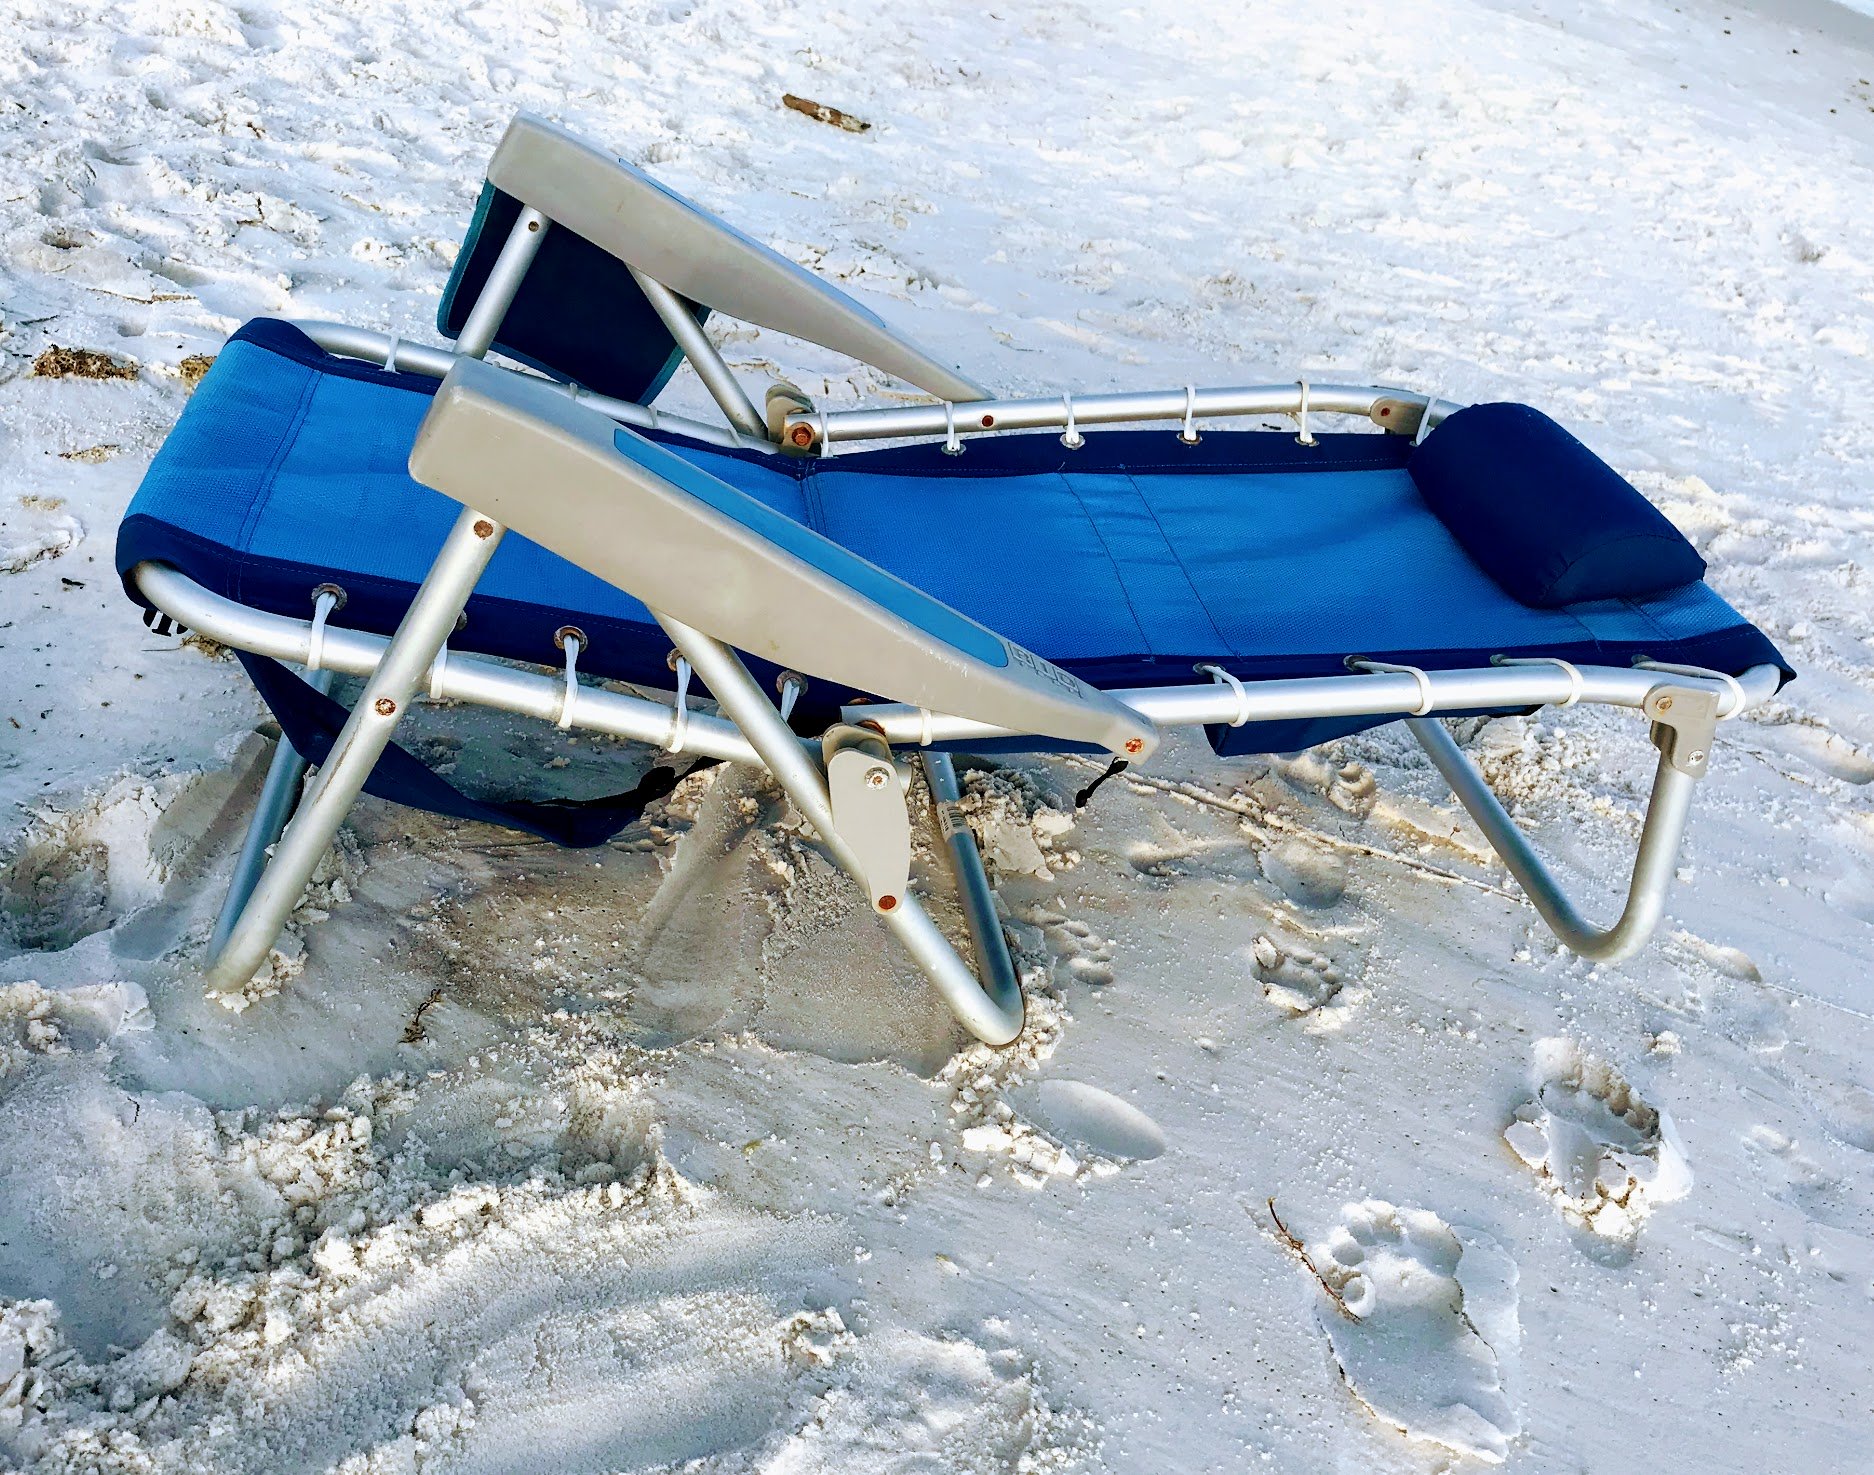 reclining beach chairs